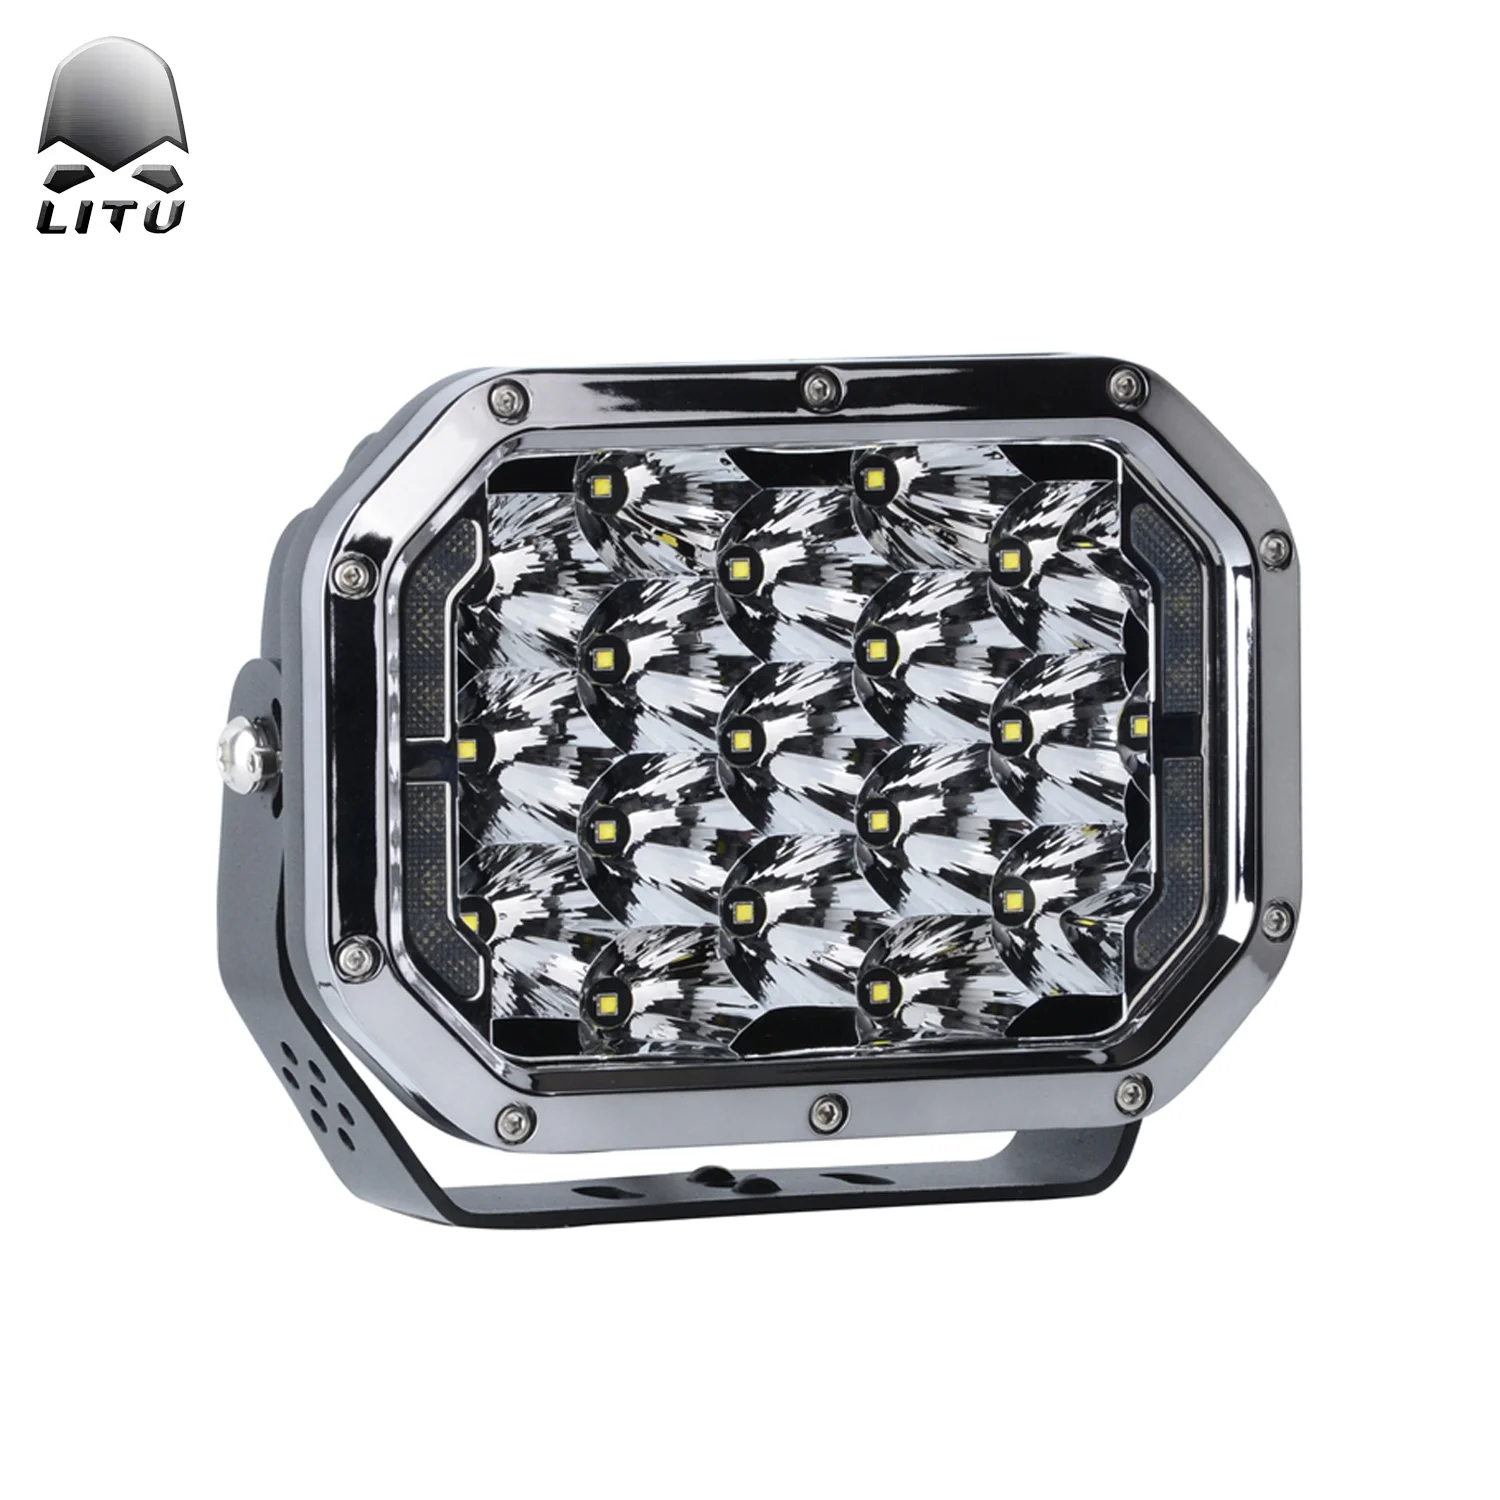 저렴한 Litu Led 작업 빛 고품질 170w 높은 전원 충전식 Led 홍수 빛 7 인치 오프로드 트럭 자동 램프 Atv